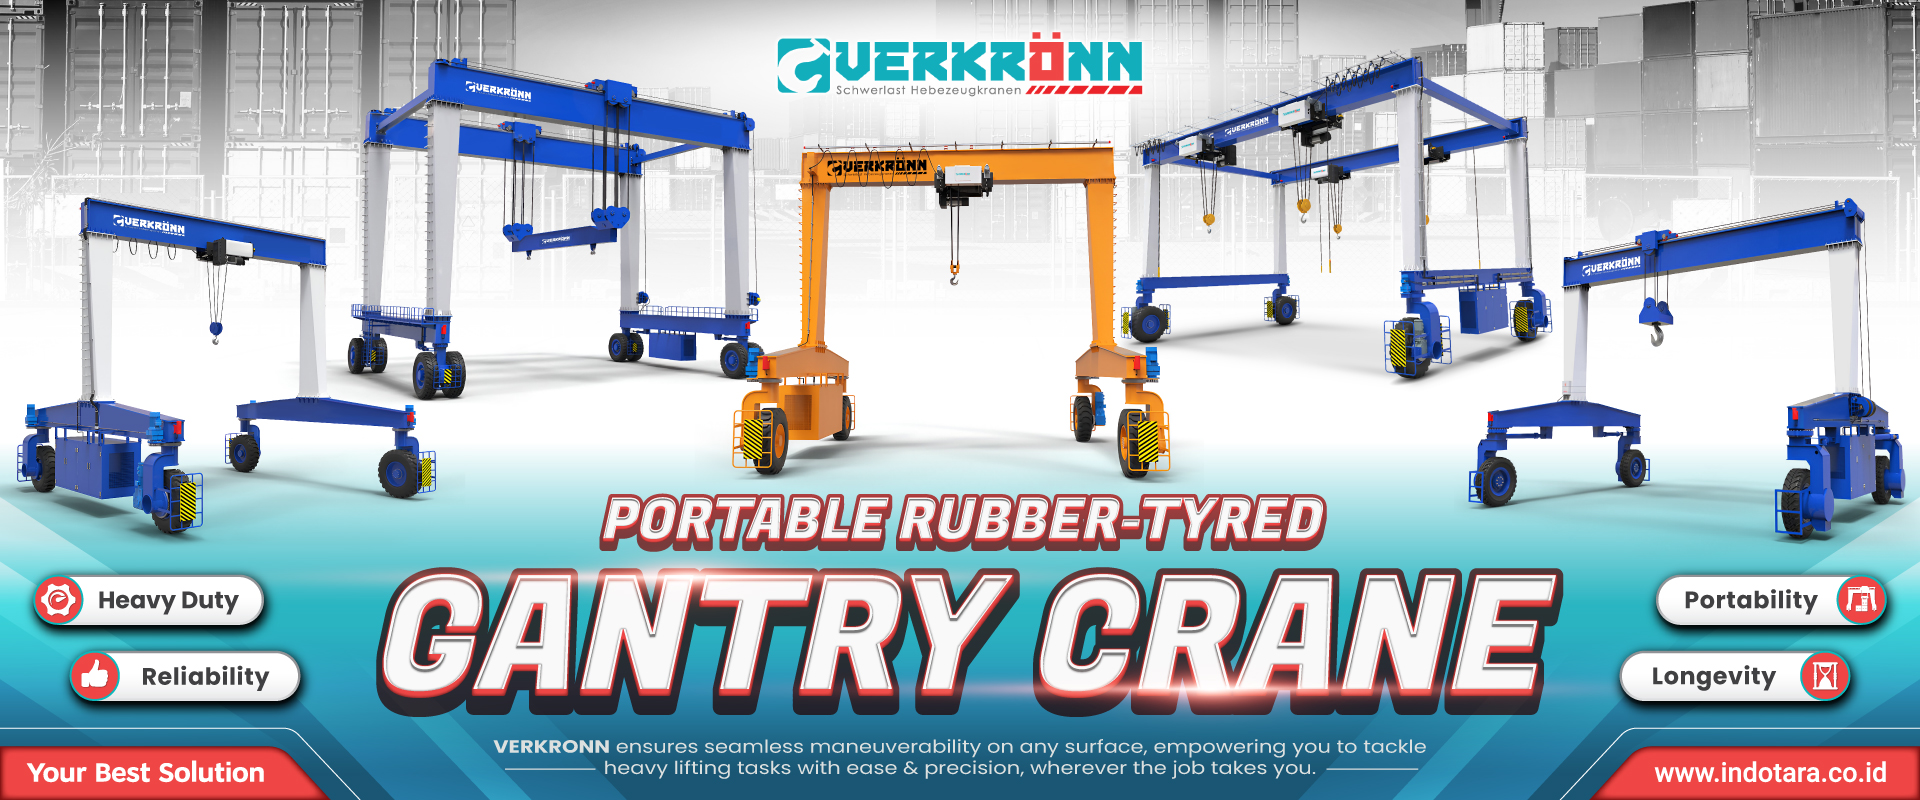 Verkronn Portable Rubber-Tyred Gantry Crane